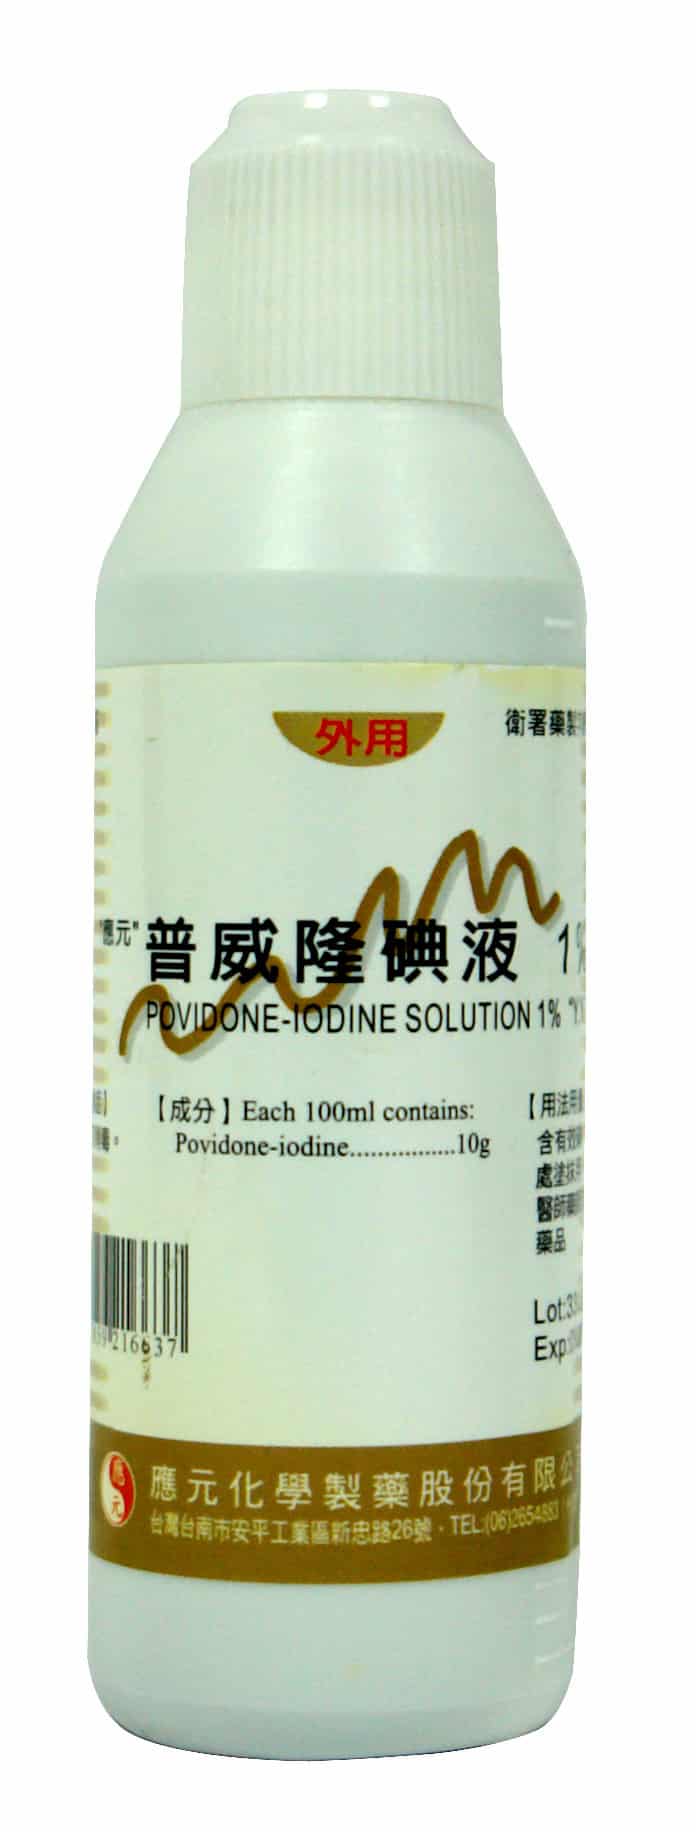 Povidone-Iodine Solution 1% “Y.Y.”